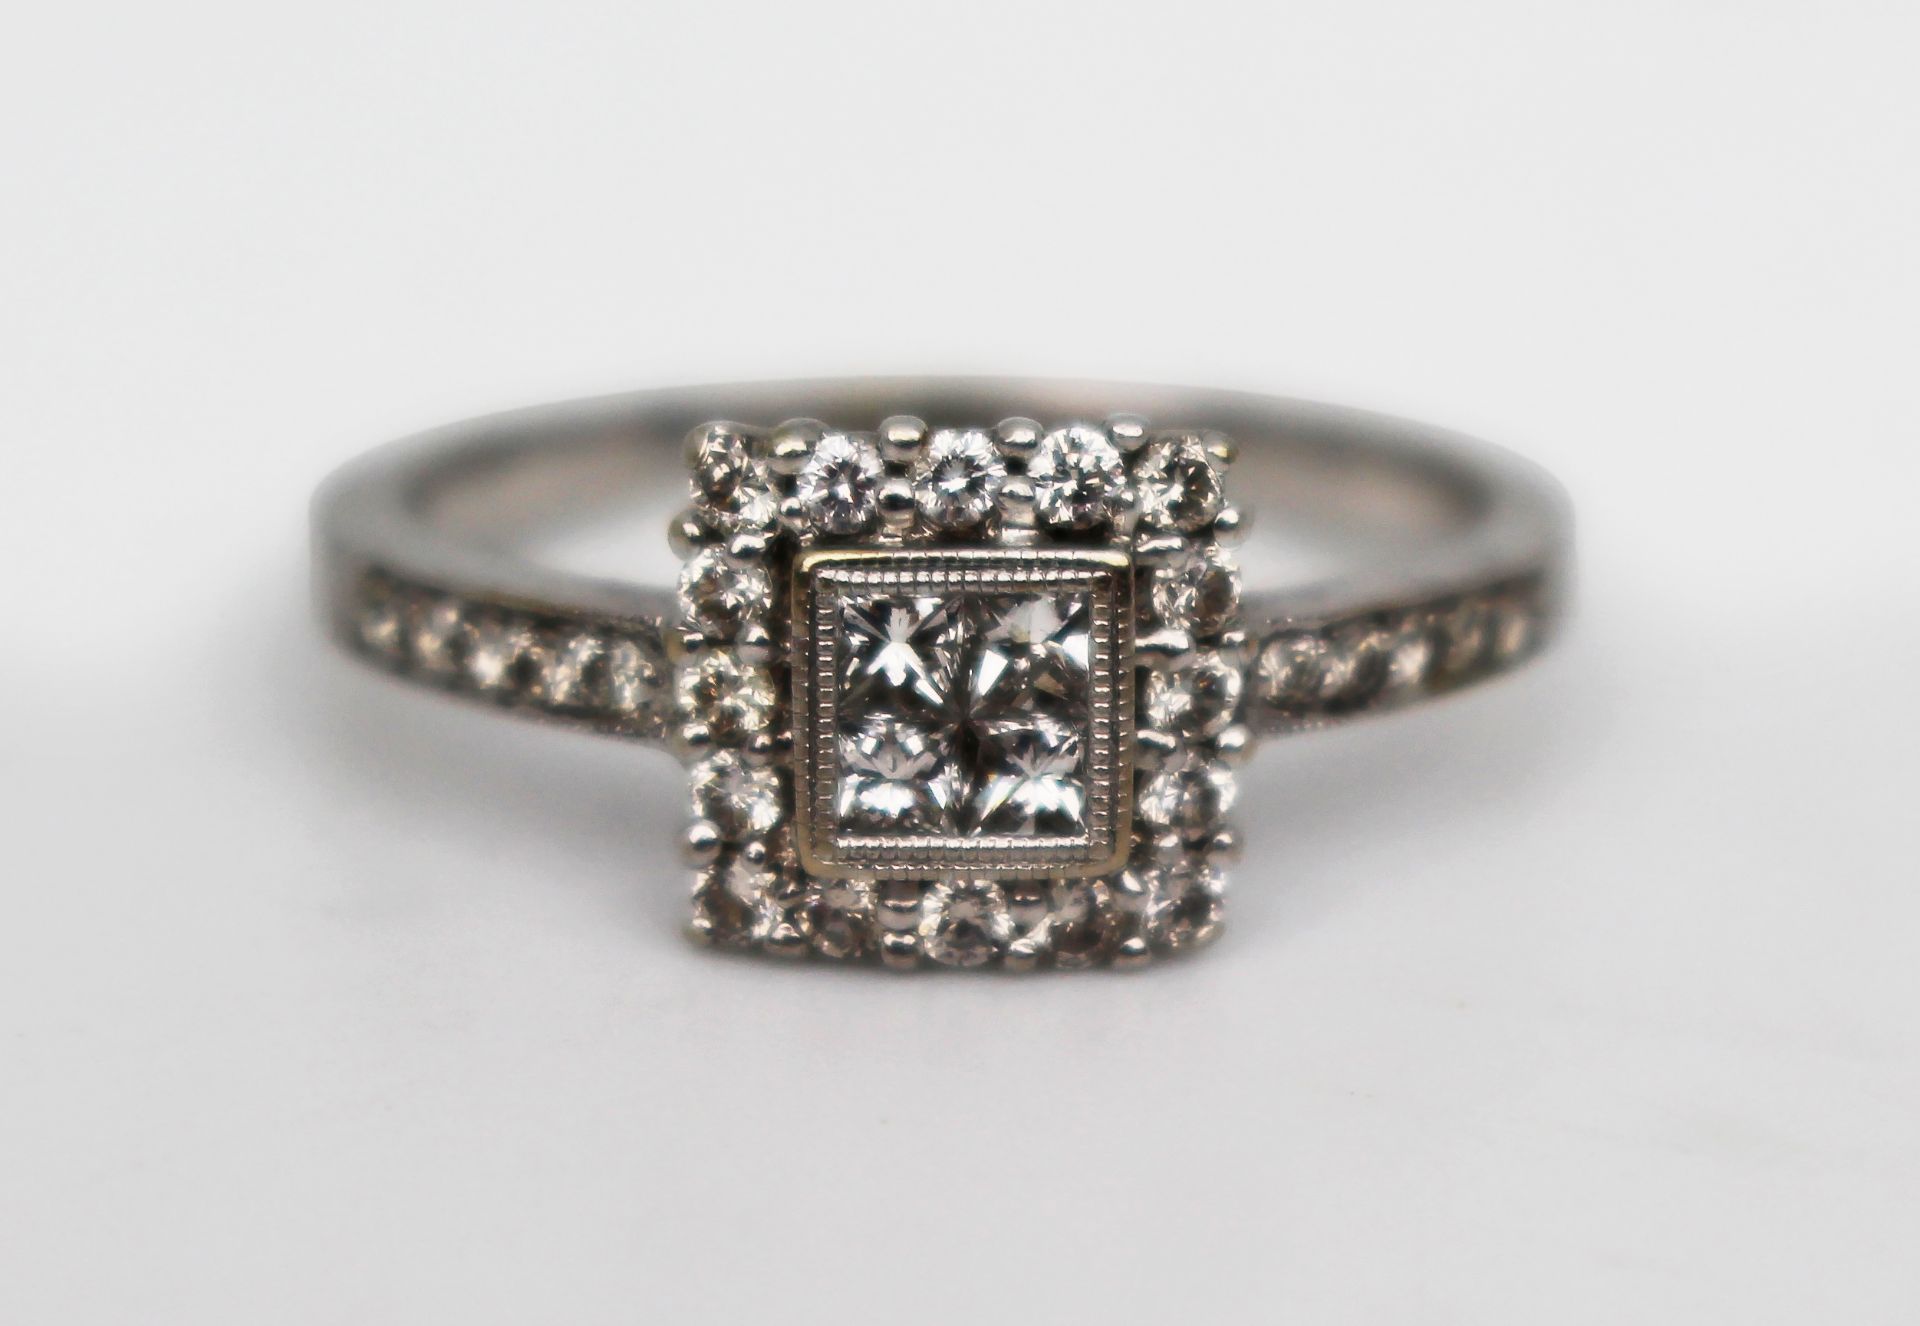 Diamond 18ct White Gold Ring 0.70 carat